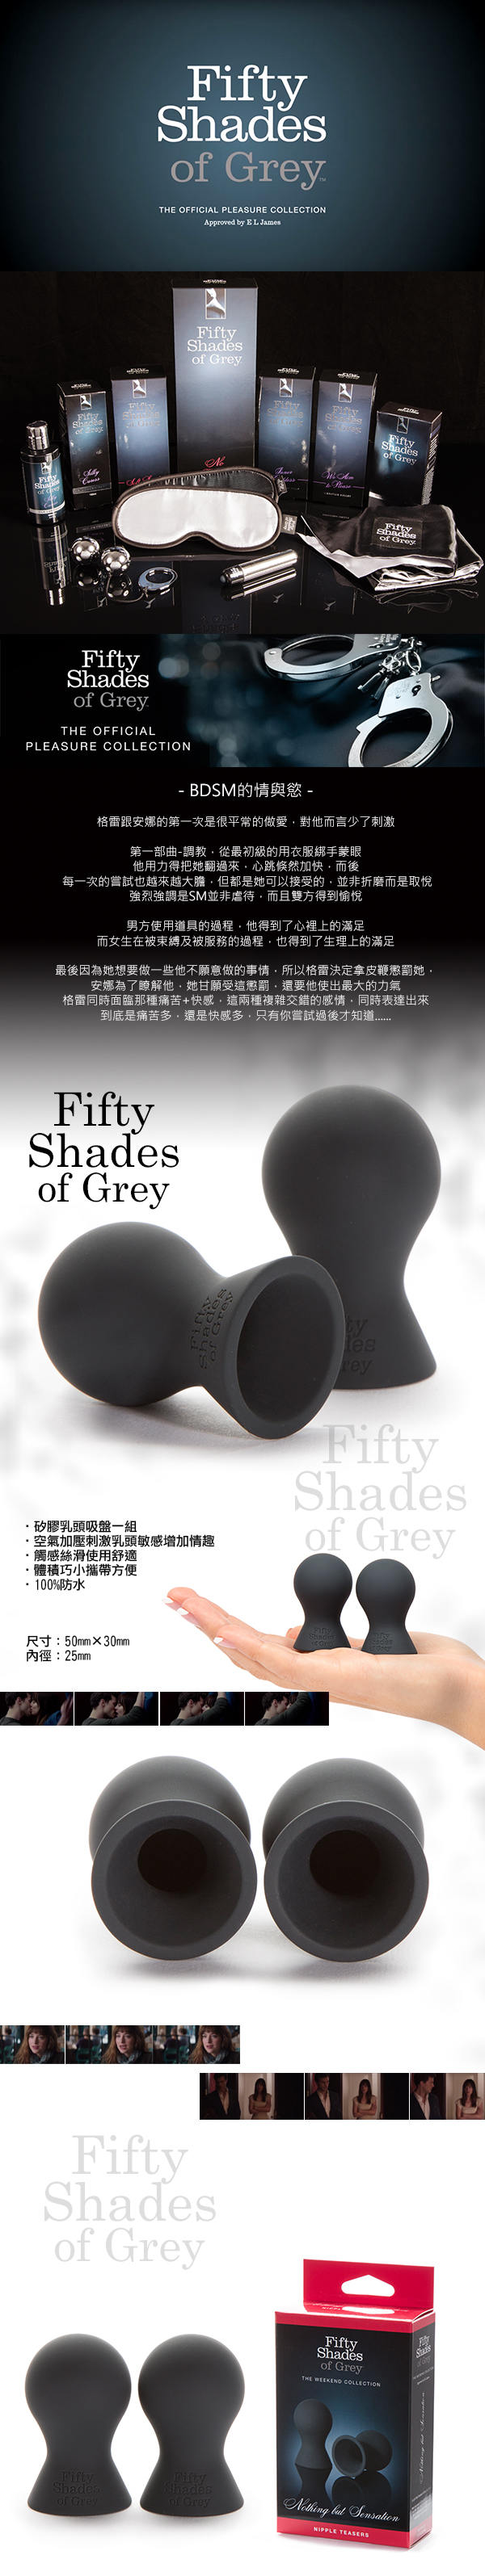 Fifty Shades Of Grey 格雷的五十道陰影  矽膠乳頭吸盤組